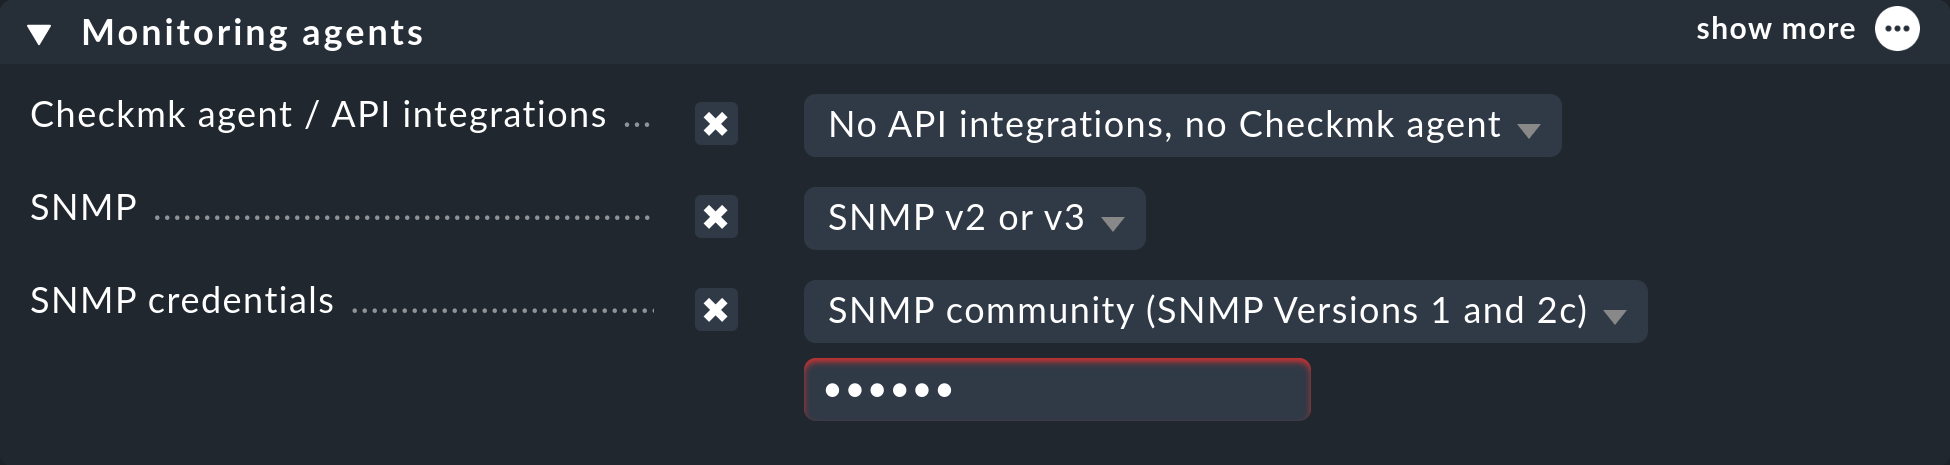 Dialog mit Eigenschaften beim Erstellen eines Hosts per SNMP: die 'Monitoring agents'.